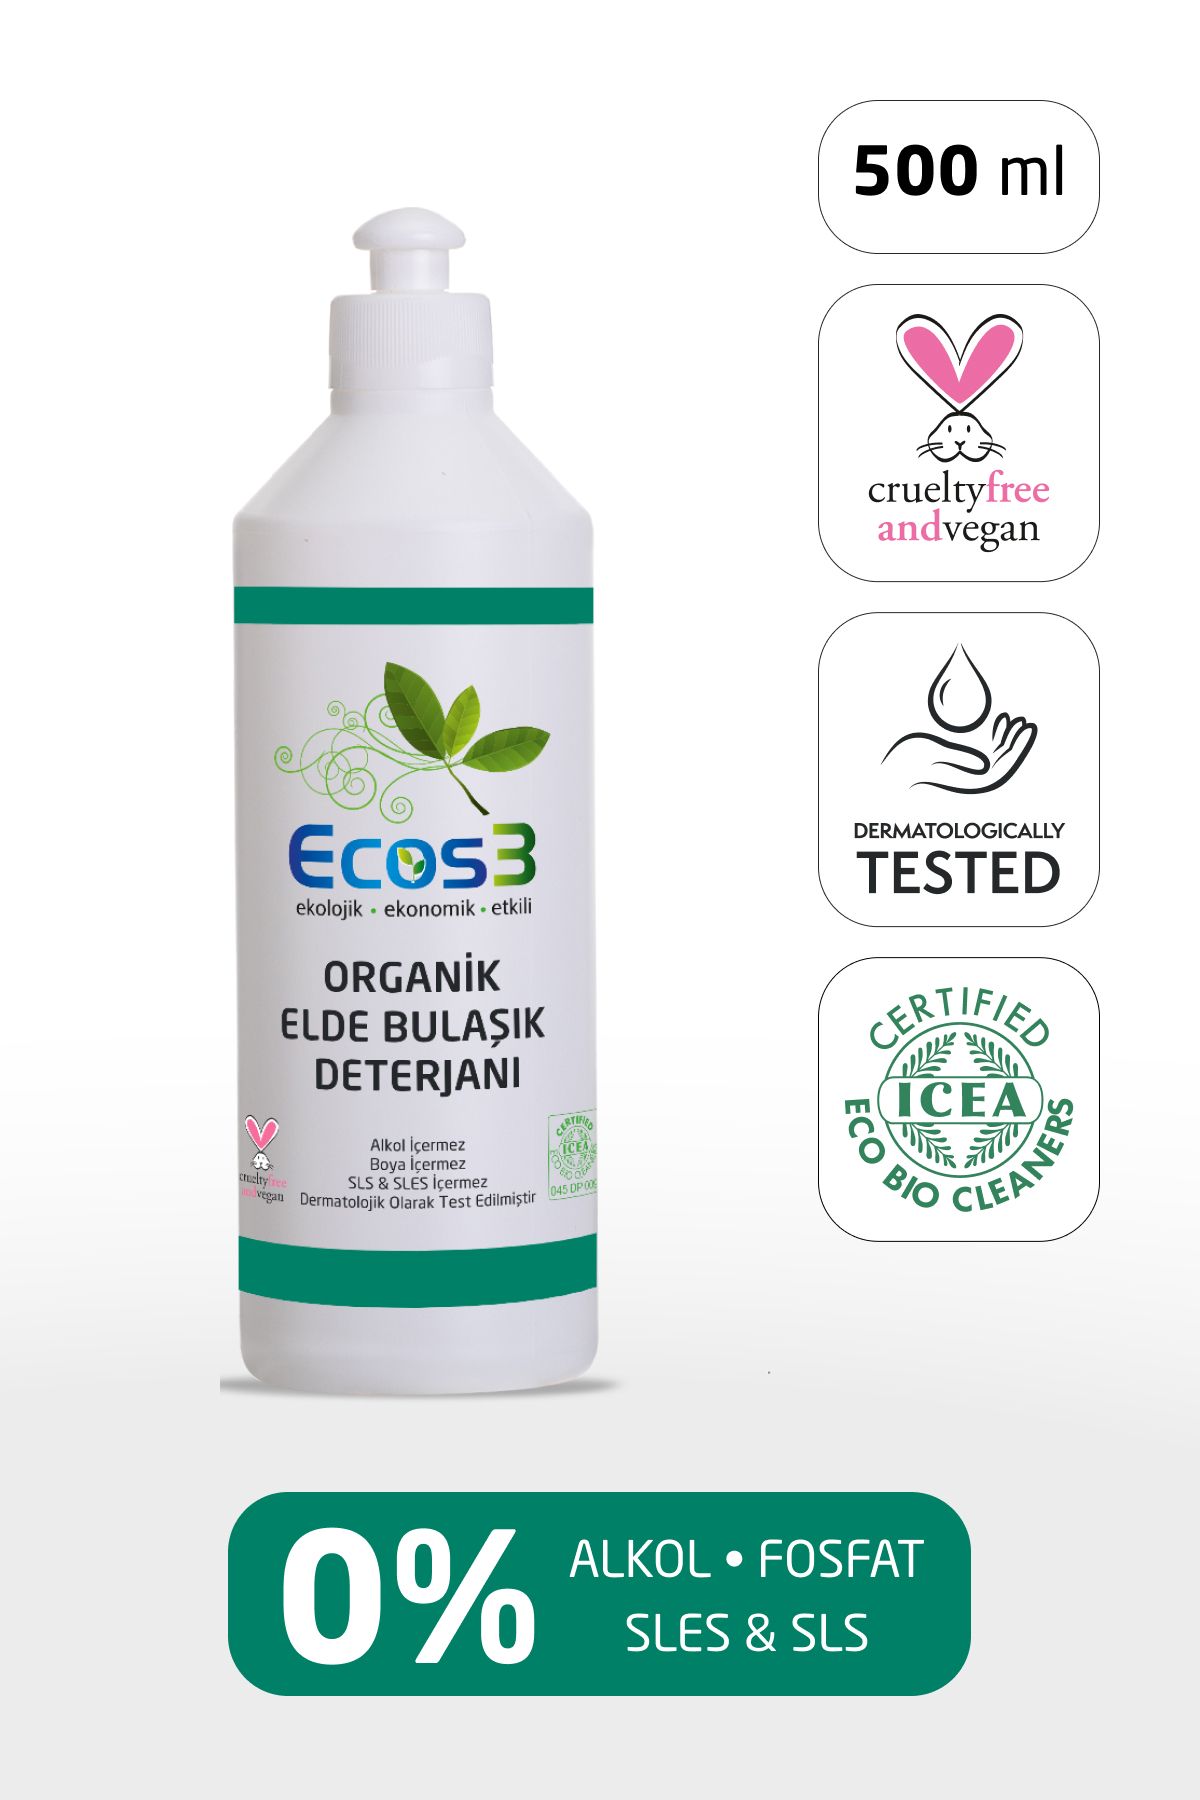 Ecos3 Elde Bulaşık Deterjanı, Organik & Vegan Sertifikalı, Ekolojik, Hipoalerjenik, Aloe Vera’lı, 500 ml